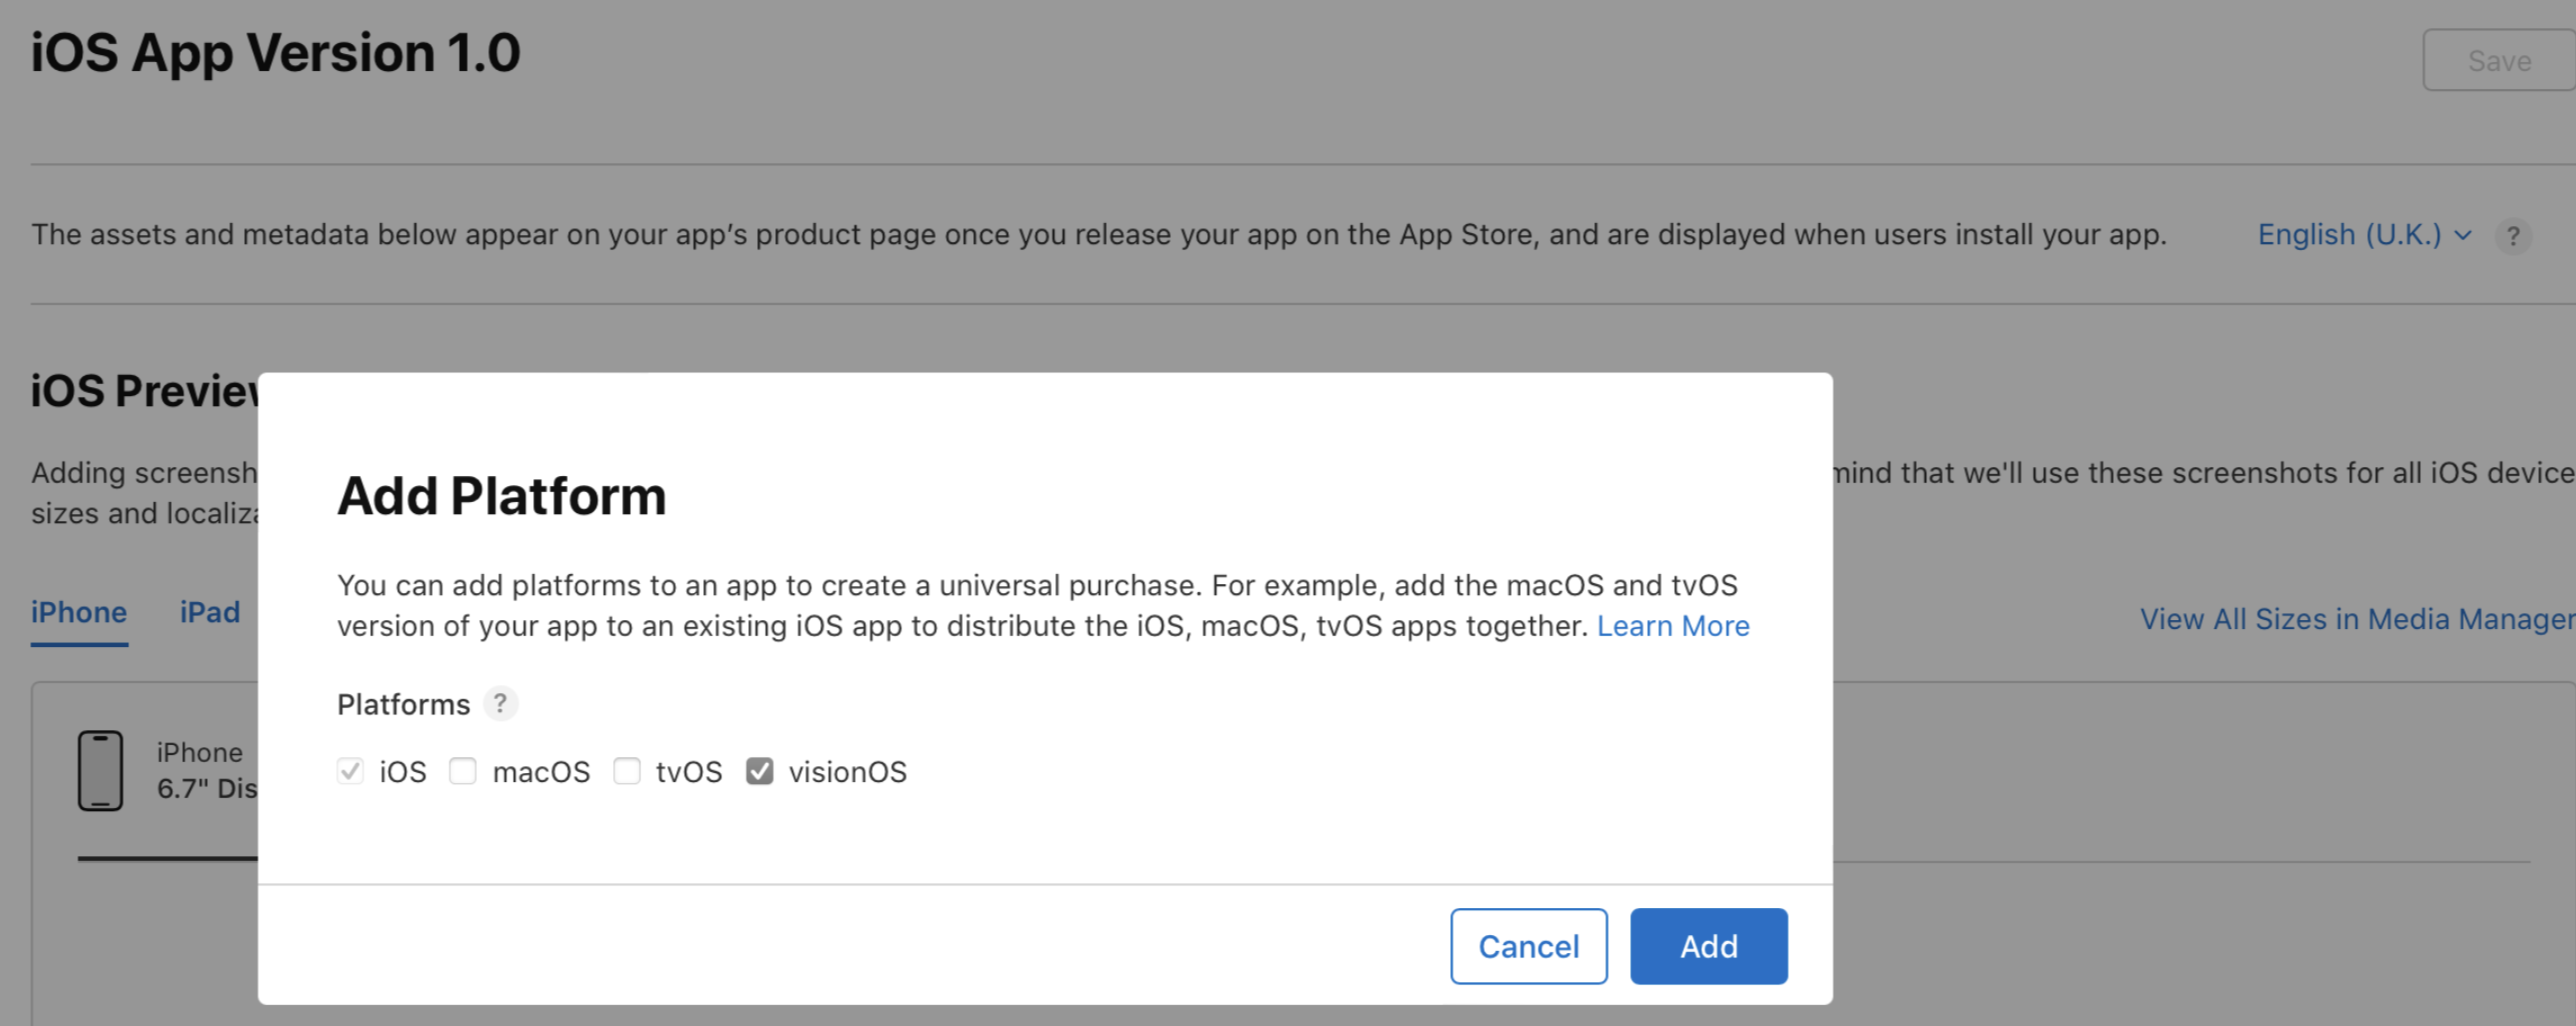 앱에 선택할 수 있는 iOS, macOS, tvOS 및 visionOS 플랫폼이 앱 세부 정보 페이지의 플랫폼 추가 대화창에 나열됩니다. “취소” 및 “추가” 버튼은 대화창 하단에 있습니다.